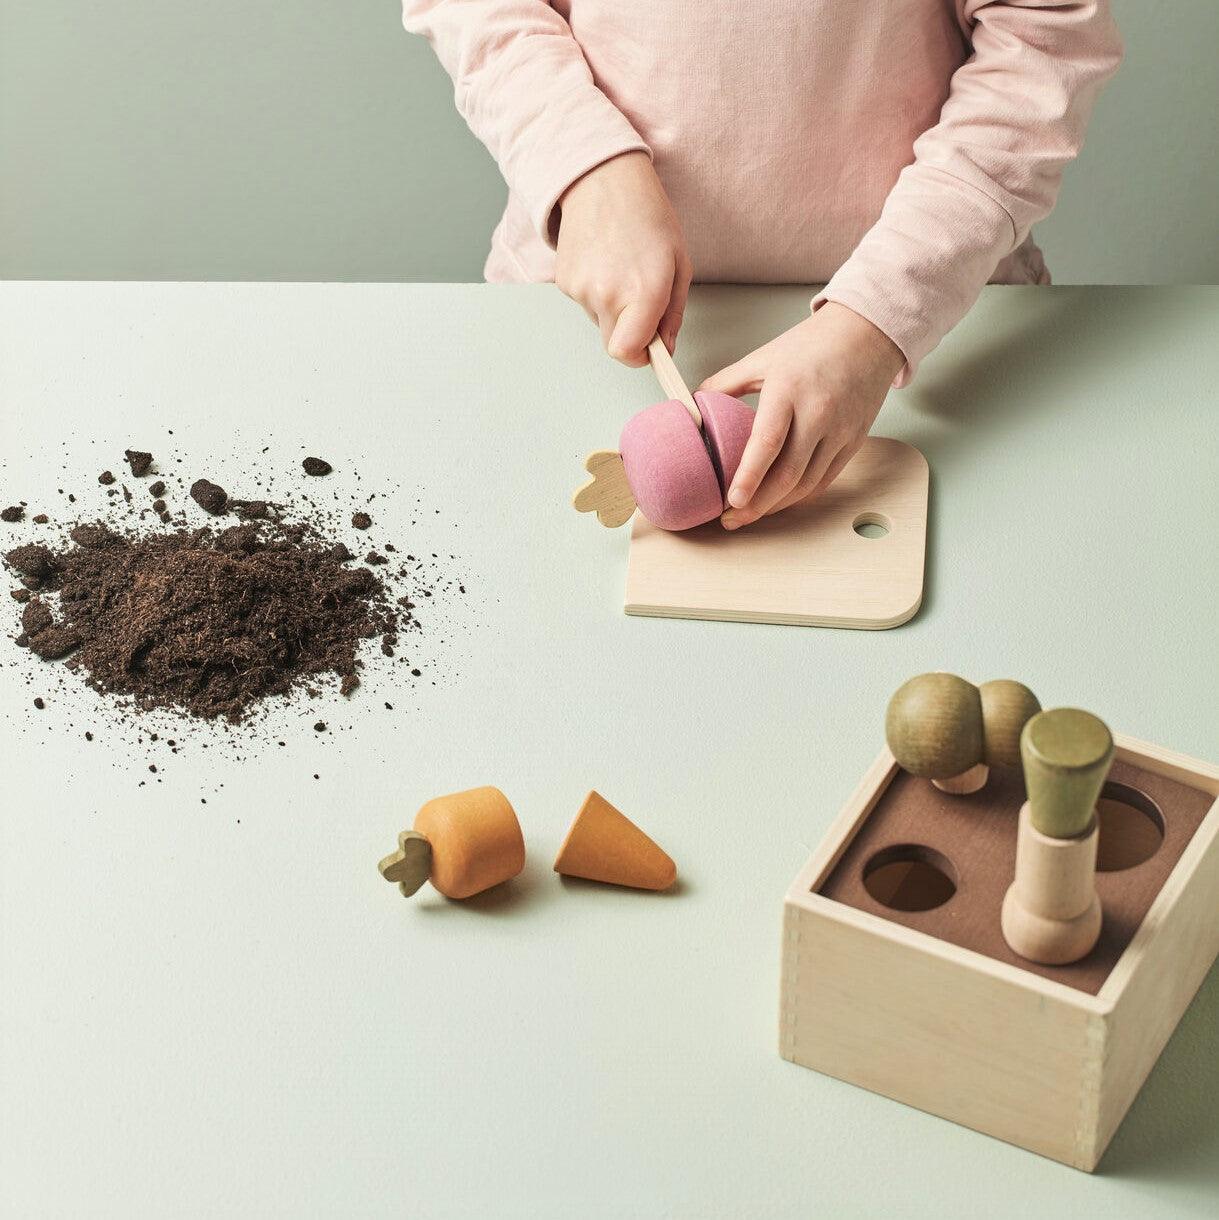 Vaikų koncepcija: medinis daržovių rūšiavimo augalų dėžutės restoranėlis